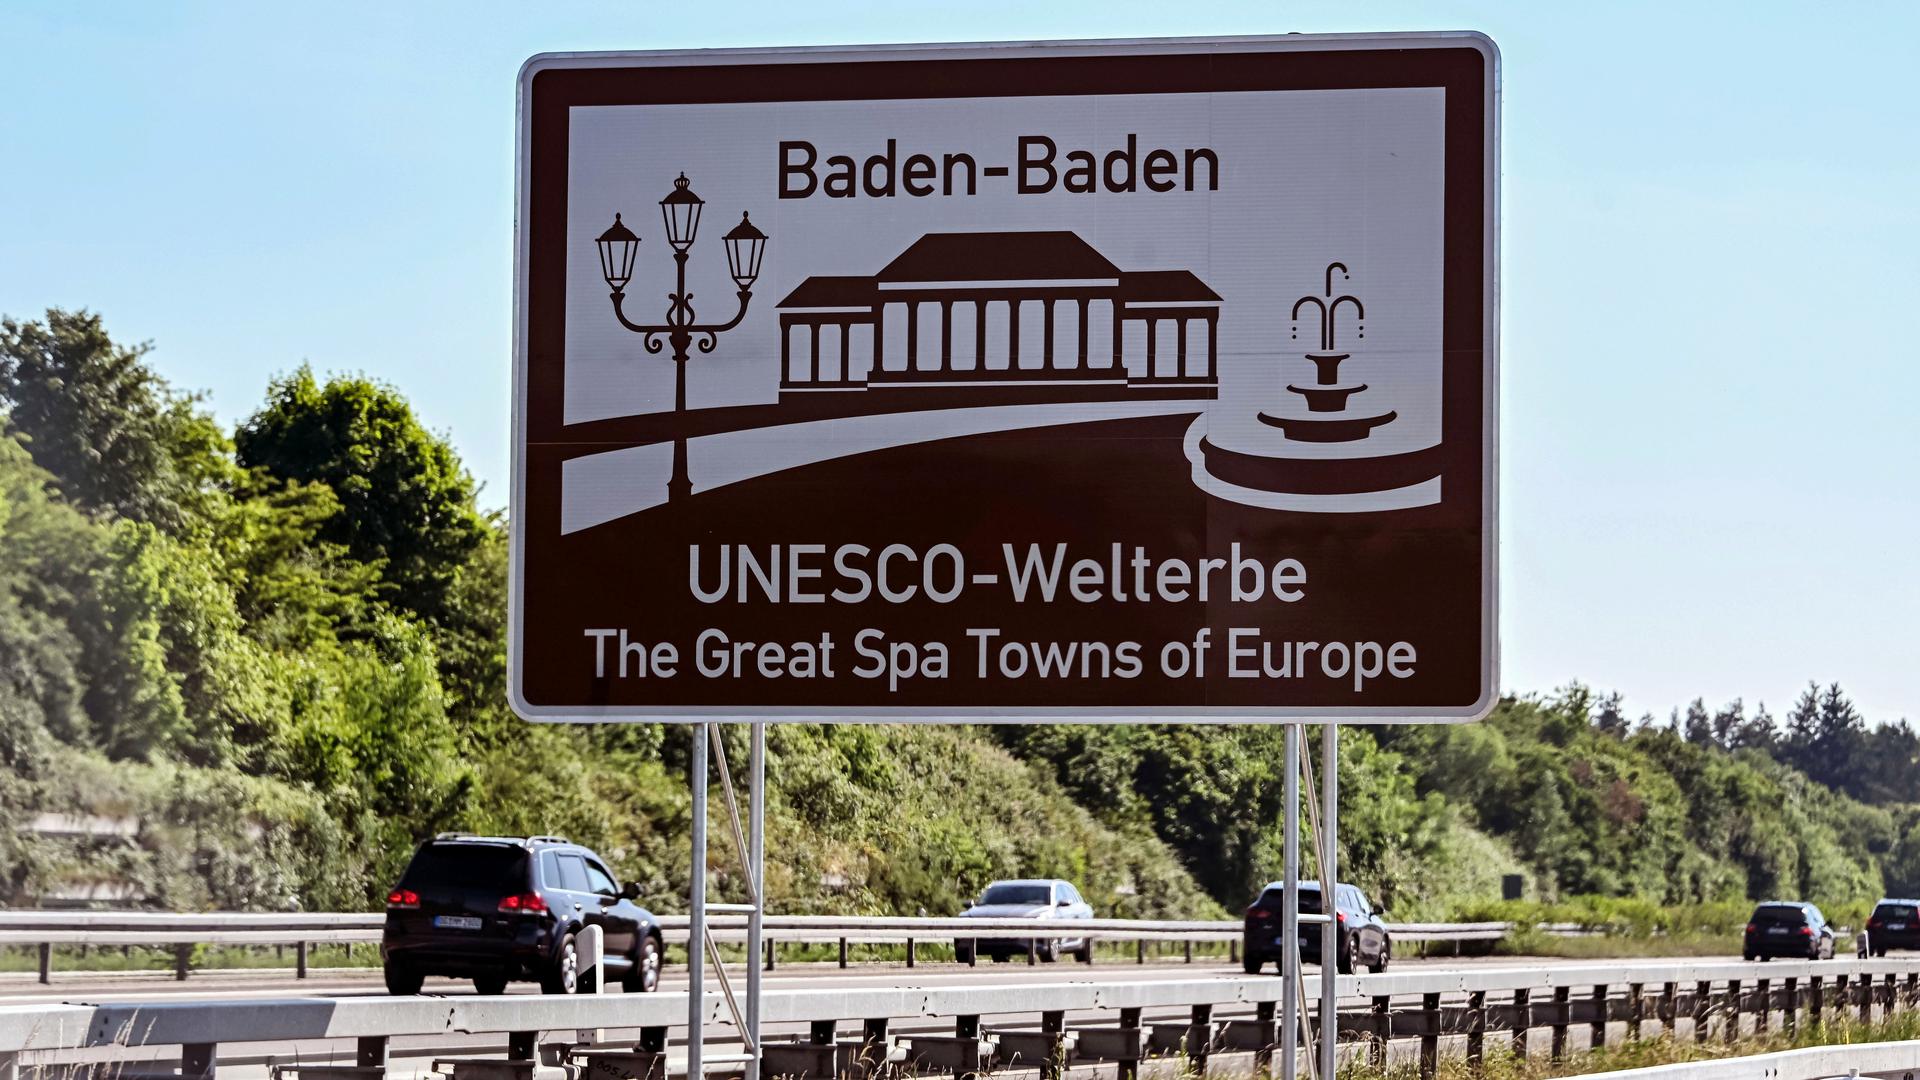 An der A5 bei Baden-Baden ist eine Infotafel angebracht, auf der steht „Baden-Baden UNESCO-Welterbe The Great Spa Towns of Europe“. Im Zusammenhang mit dem geplanten Zentralklinikum Mittelbaden wird in Baden-Baden über die Relevanz des Geburtsortes diskutiert.